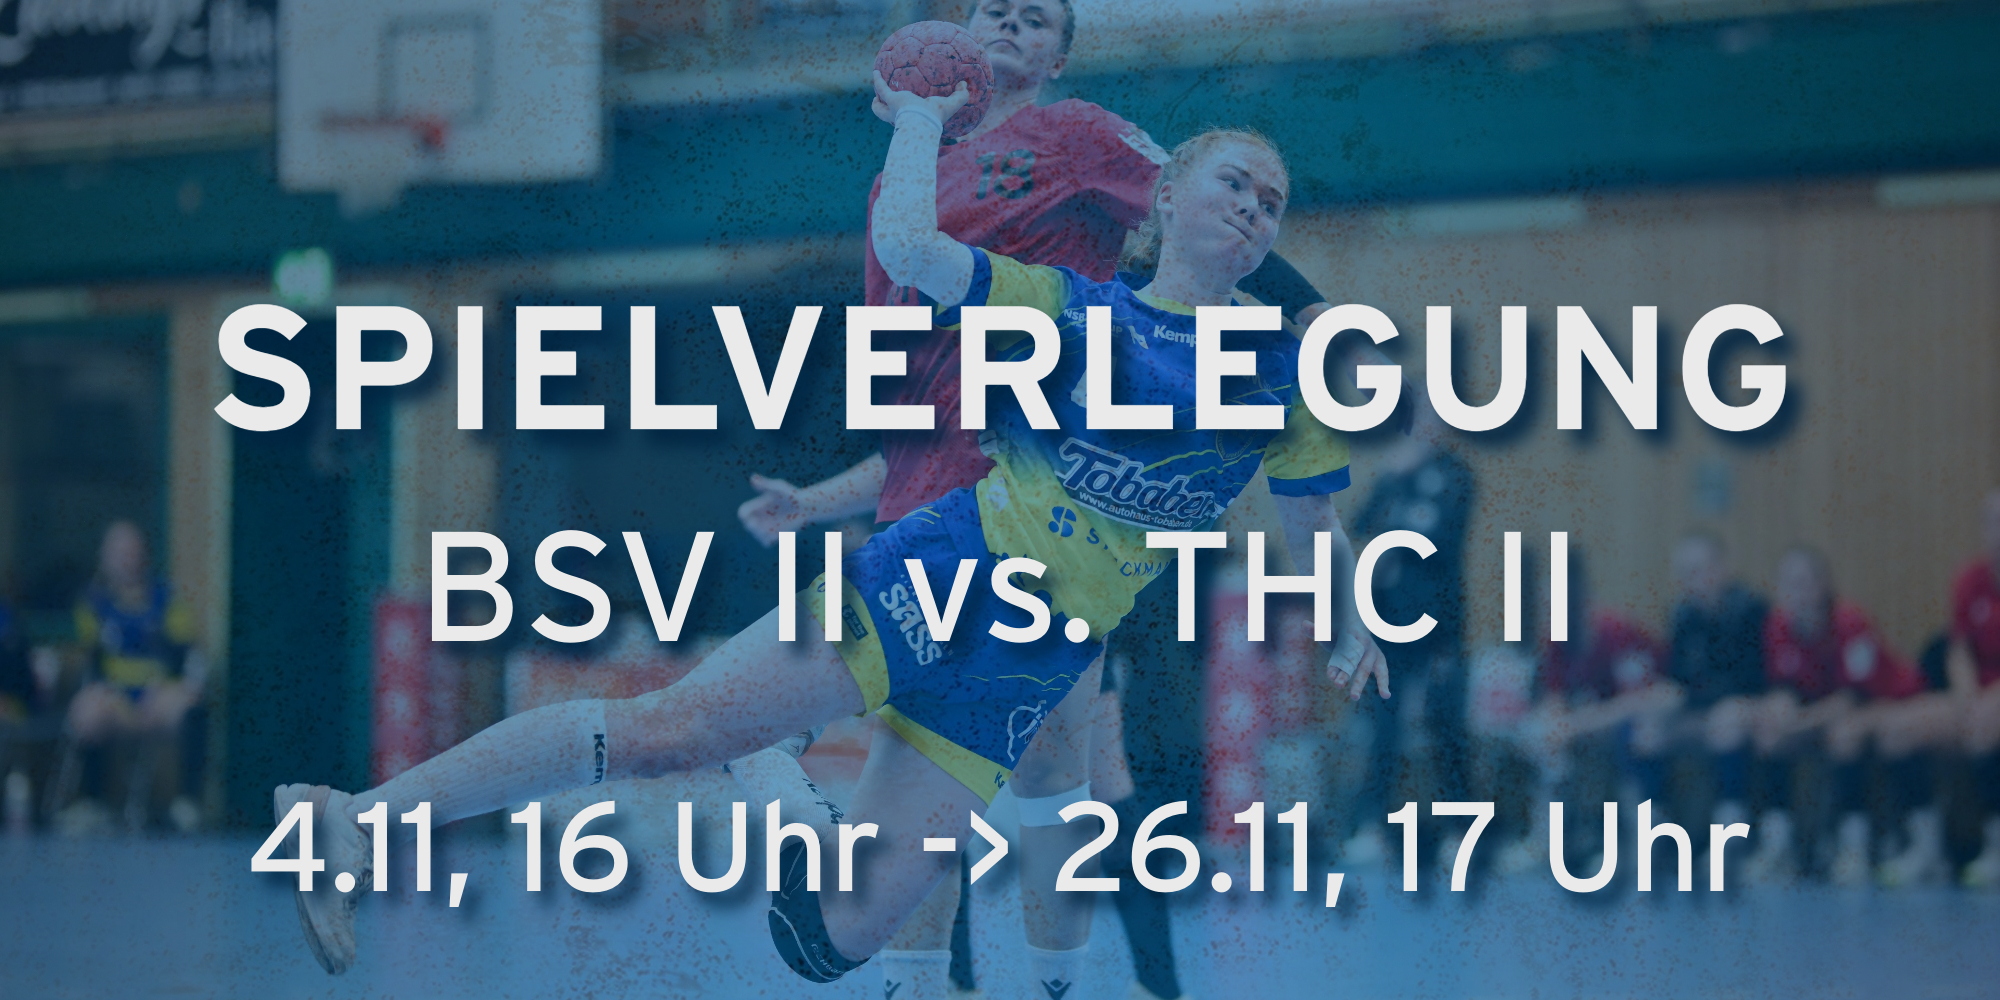 Buxtehuder SV – Handball Bundesliga Frauen